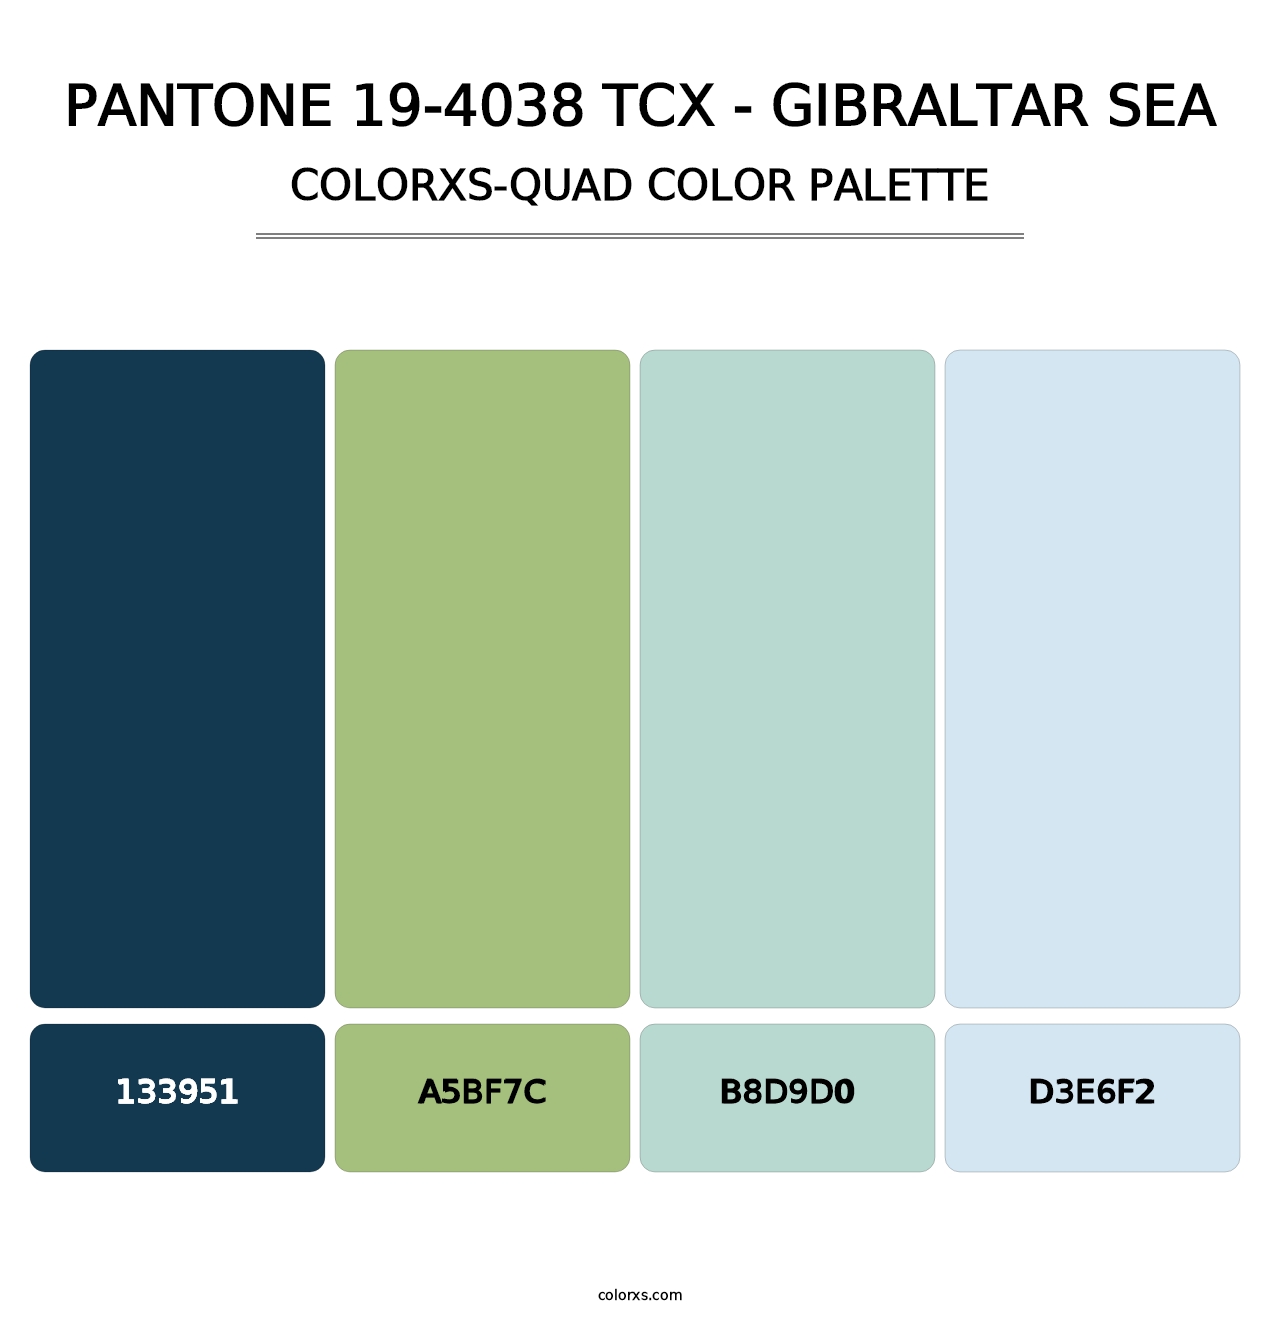 PANTONE 19-4038 TCX - Gibraltar Sea - Colorxs Quad Palette